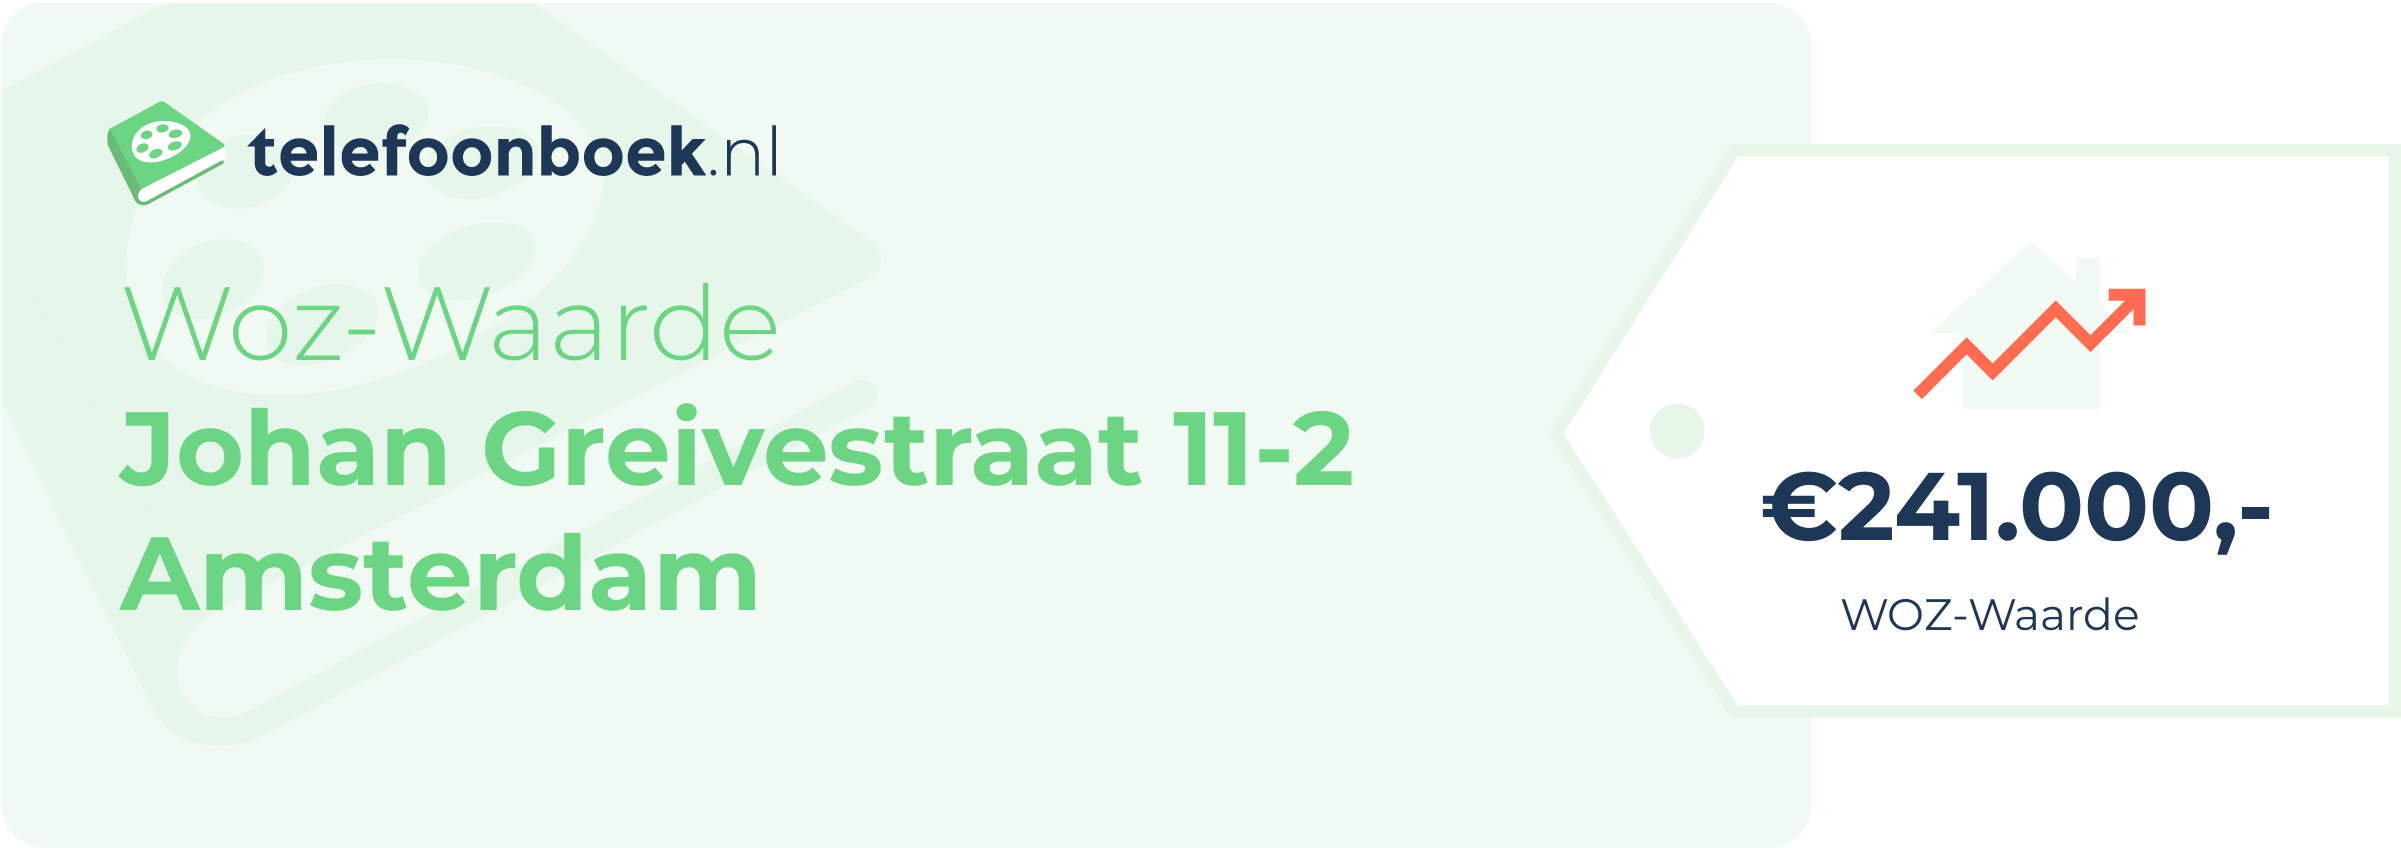 WOZ-waarde Johan Greivestraat 11-2 Amsterdam